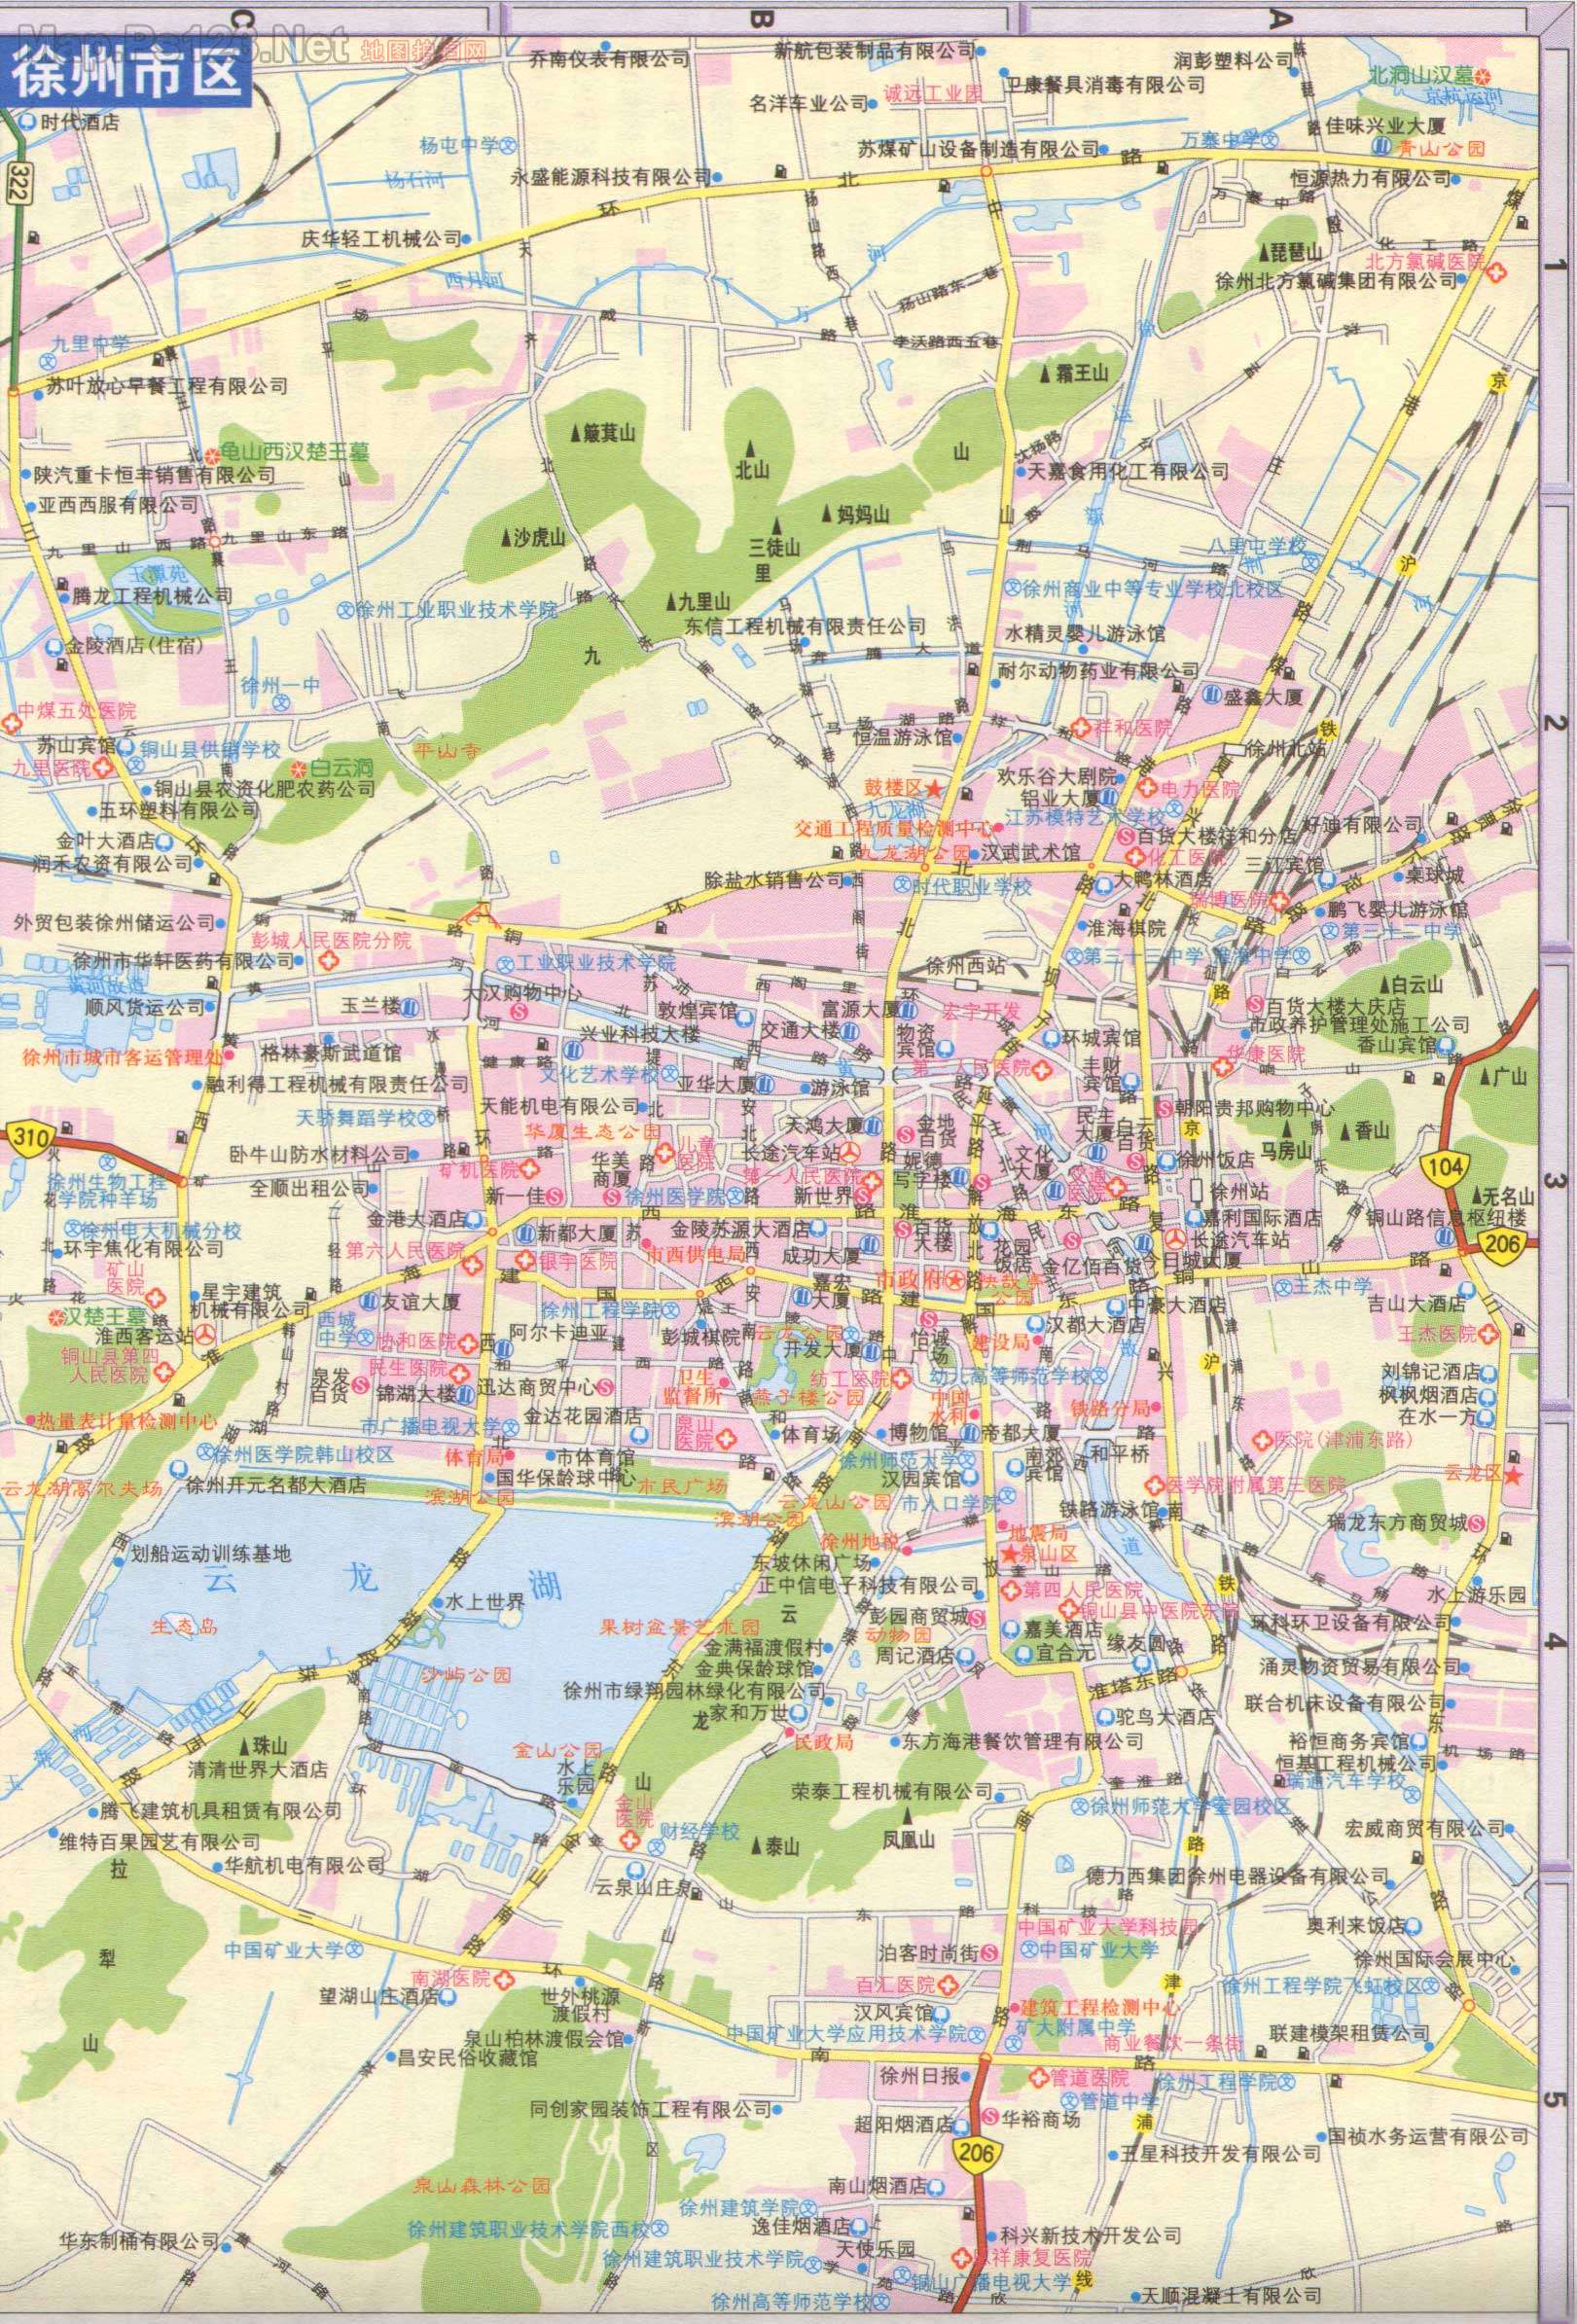 徐州市地图高清版|徐州市地图高清版全图高清版大图片|旅途风景图片网|www.visacits.com